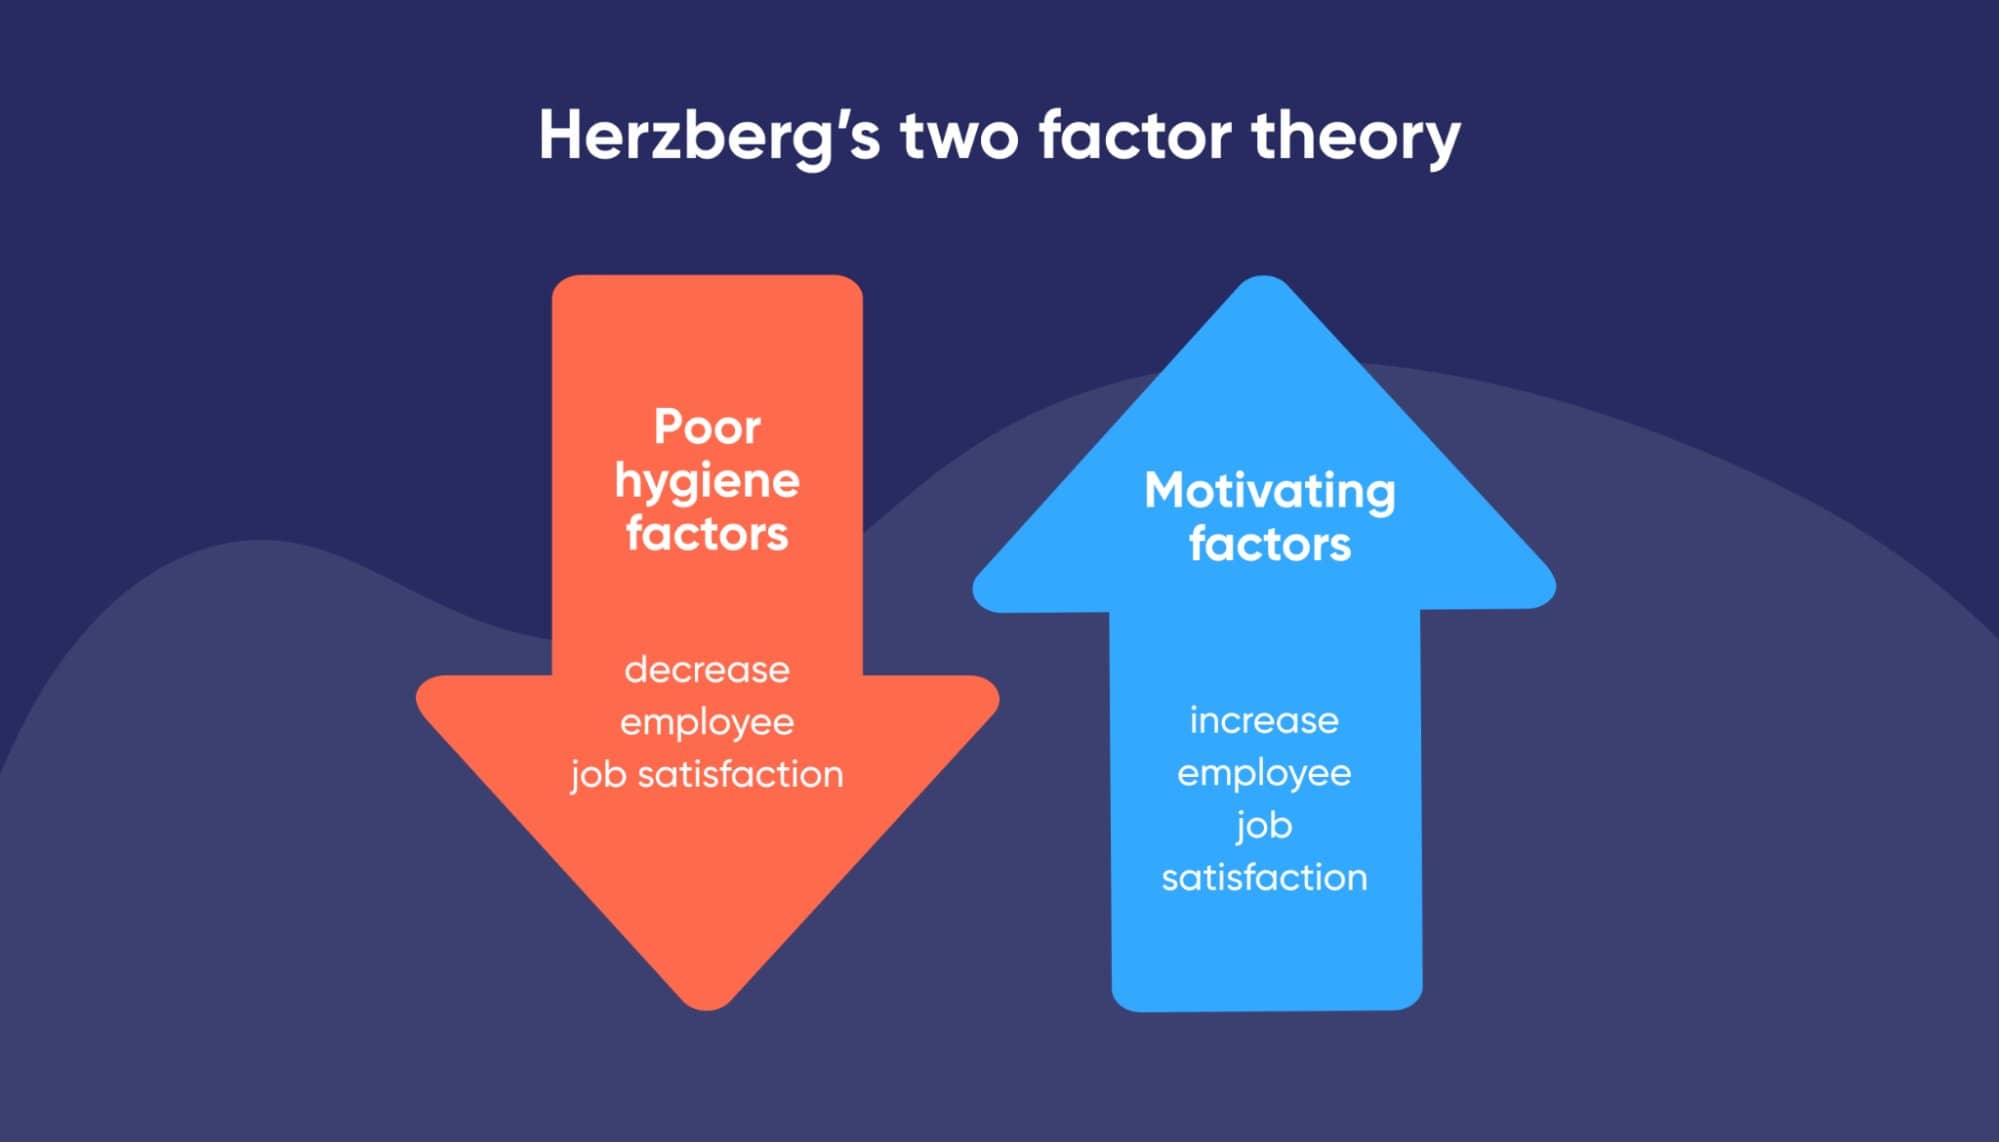 نظریه دو عاملی هرزبرگ